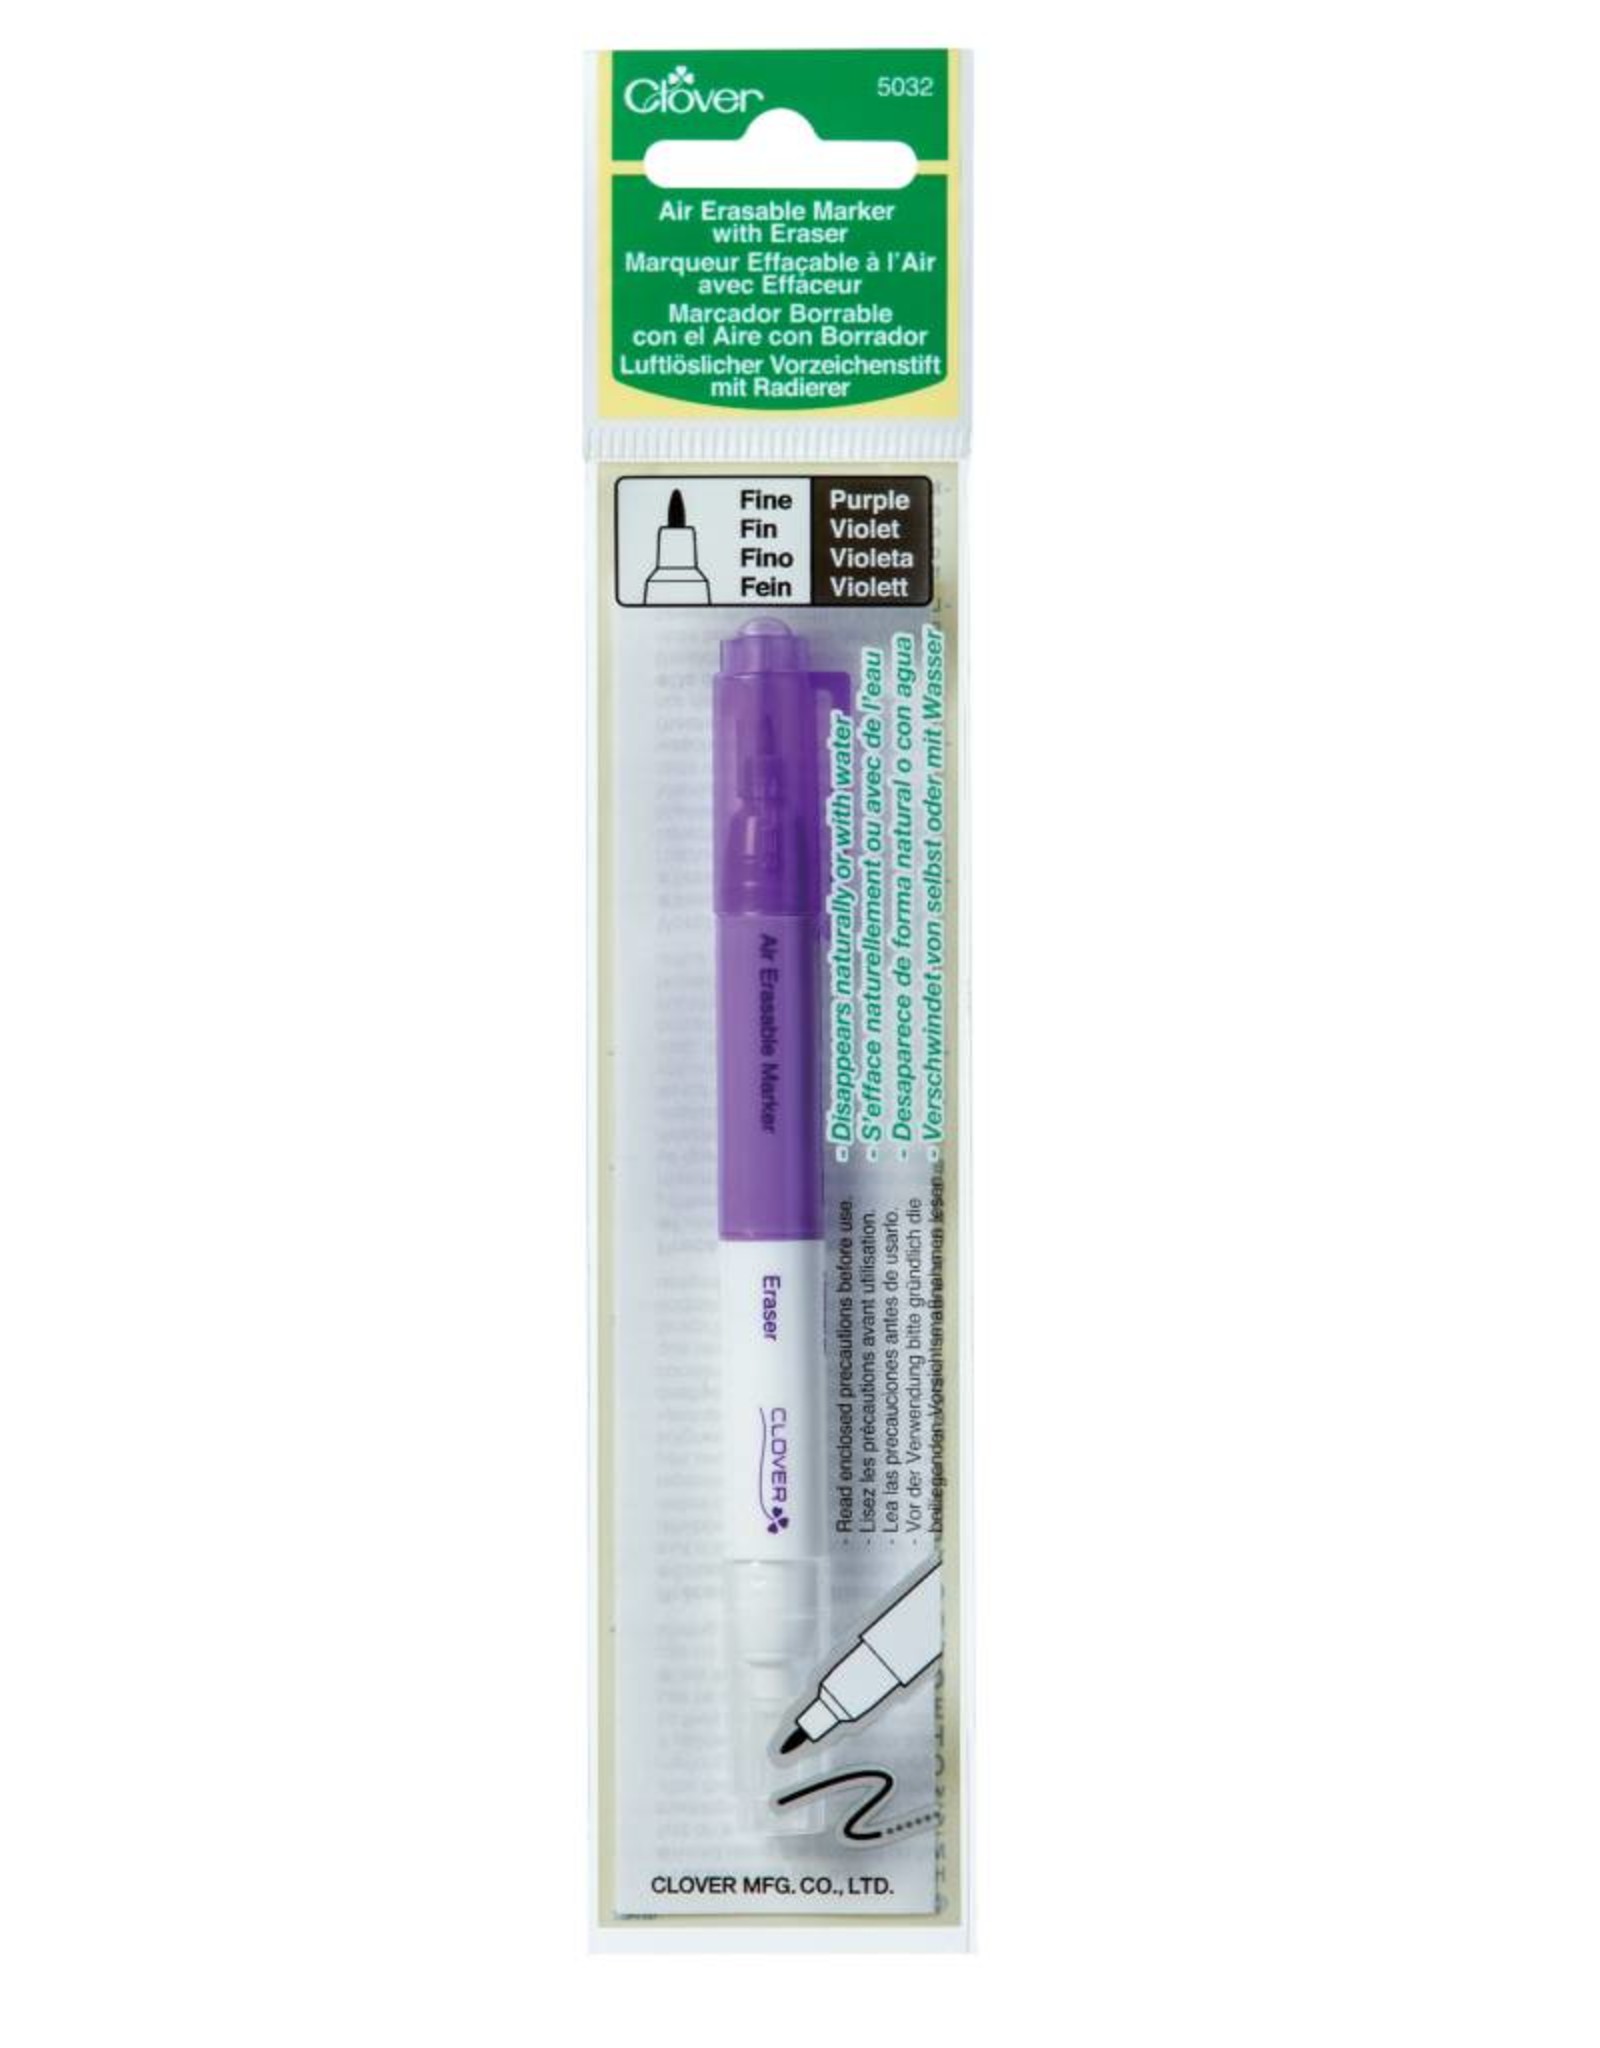 Clover Air Erasable Marker with Eraser - Purple (4-14 days)